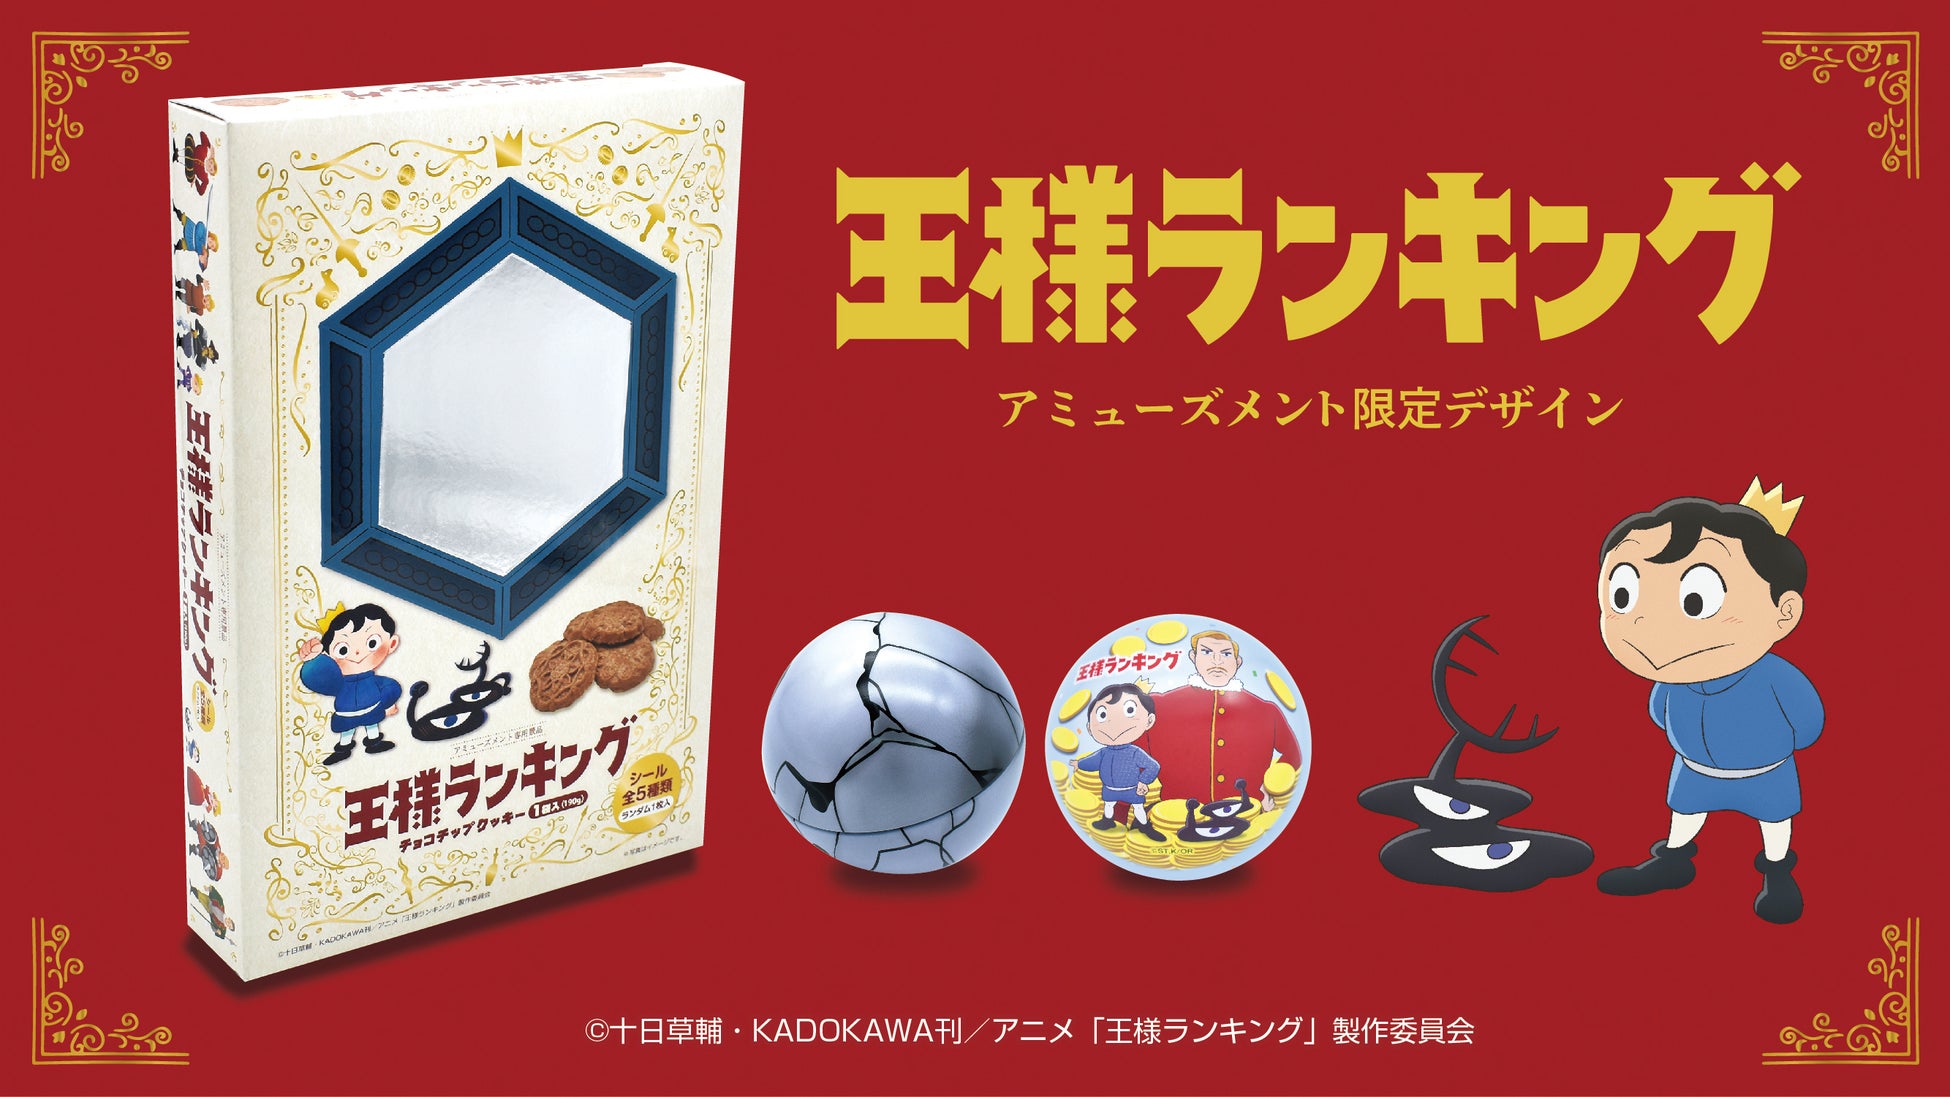 テレビアニメ「王様ランキング」の “球缶” ＆ “魔法の鏡BOX” がアミューズメント施設限定で登場！王様ランキングの世界観が詰まったアミューズメント限定デザインです♪